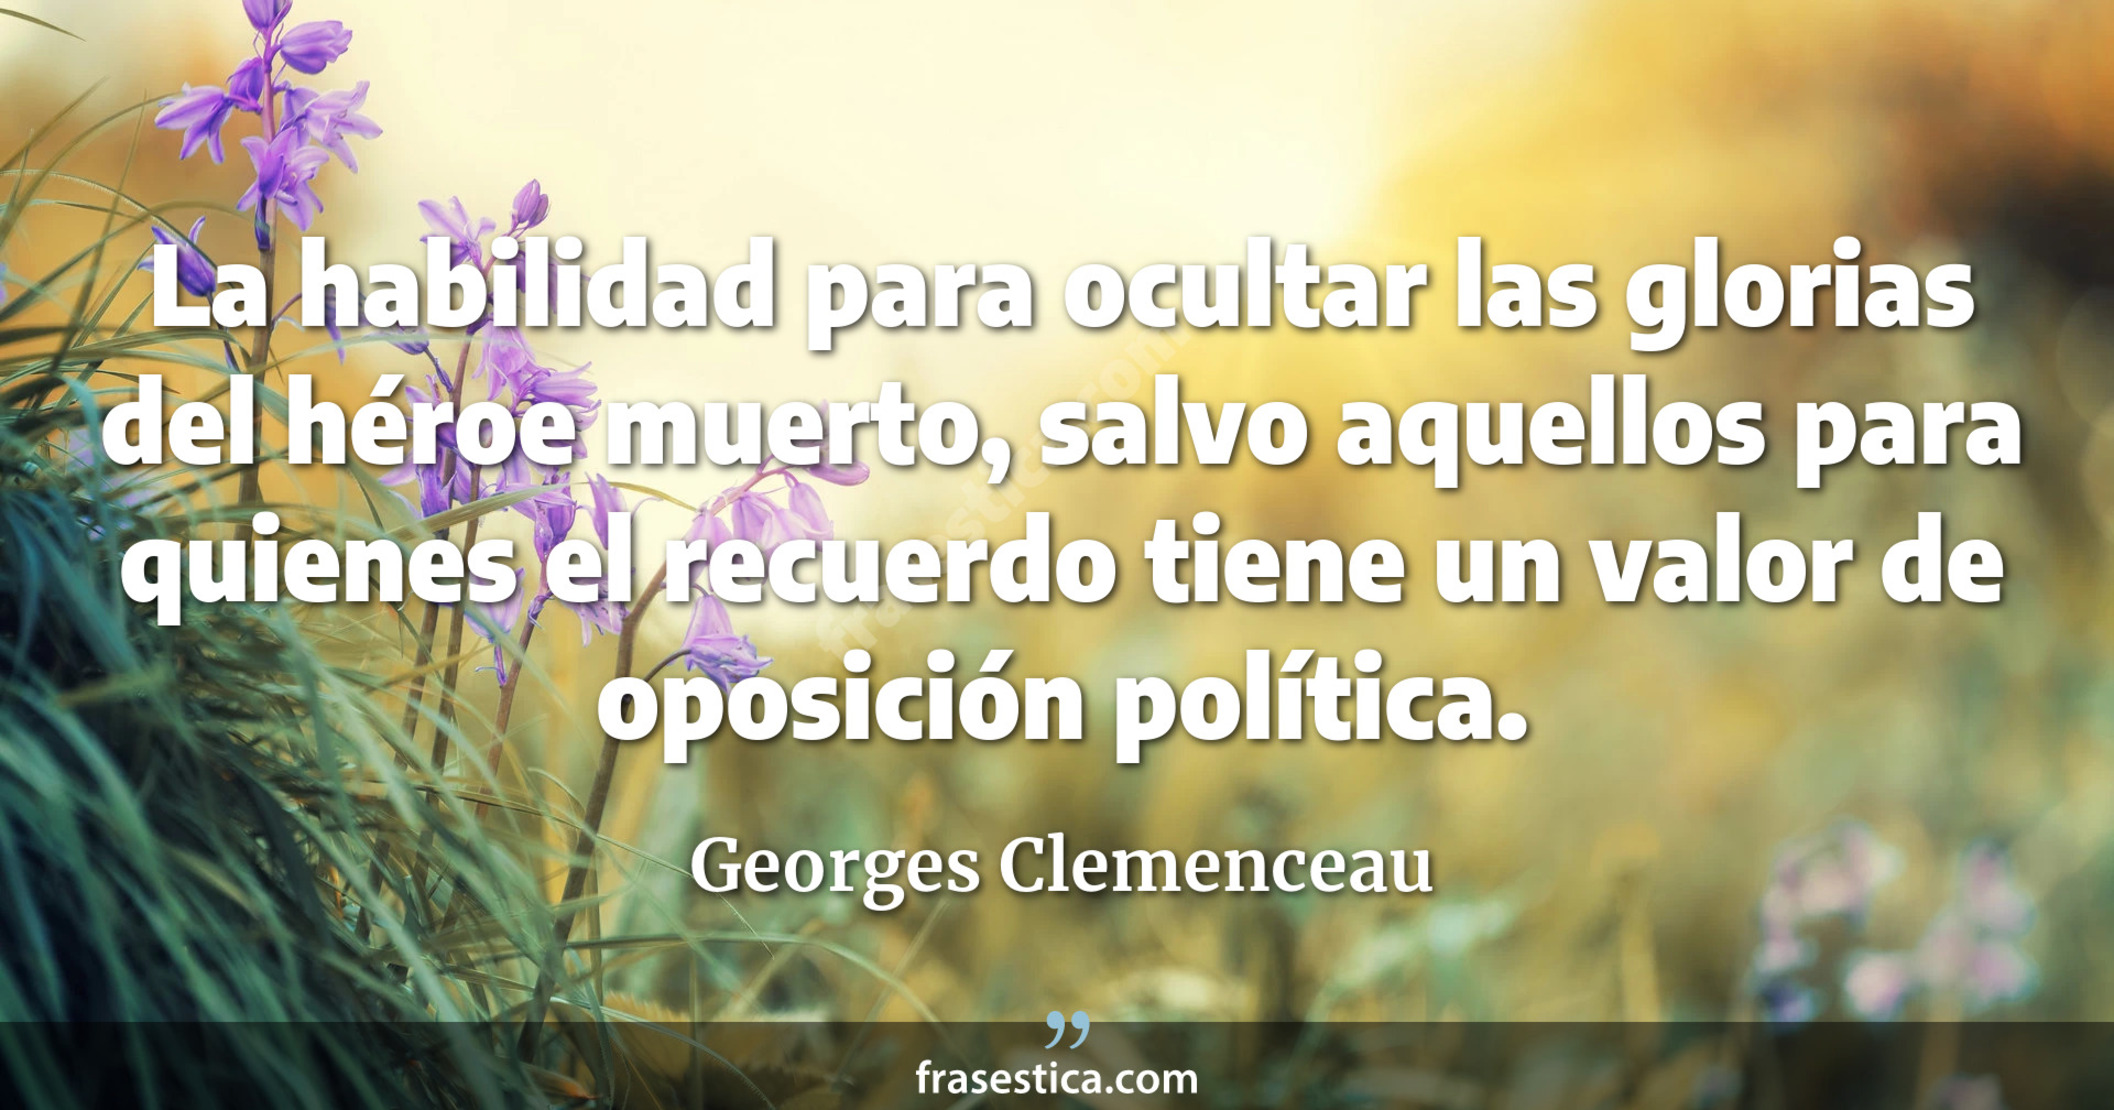 La habilidad para ocultar las glorias del héroe muerto, salvo aquellos para quienes el recuerdo tiene un valor de oposición política. - Georges Clemenceau